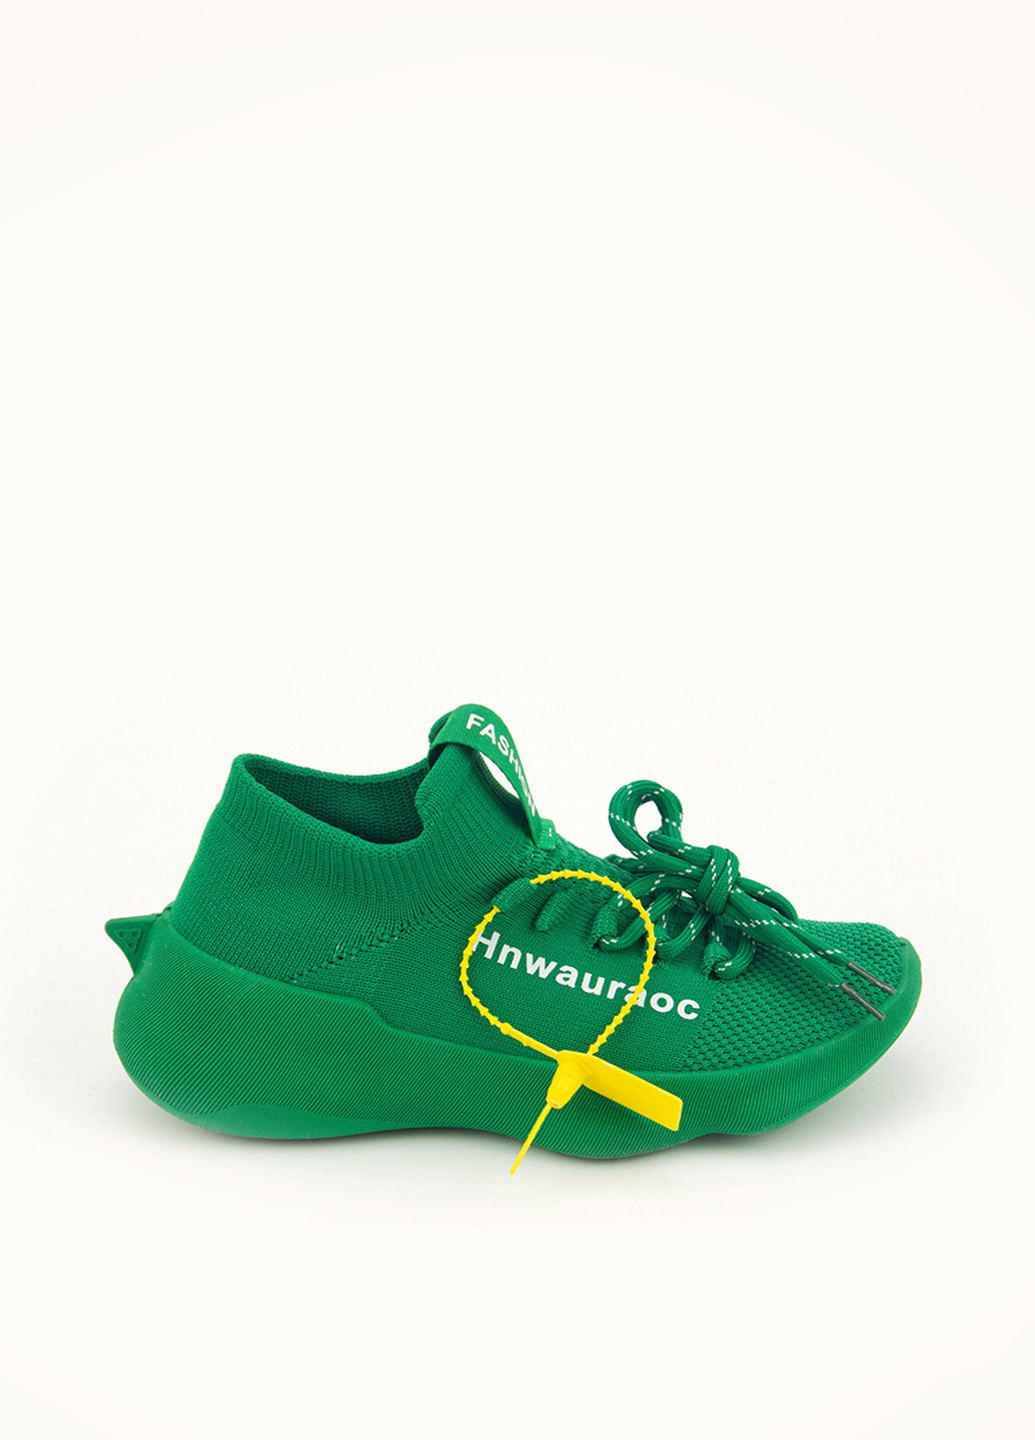 Зелені осінні кросівки Respect